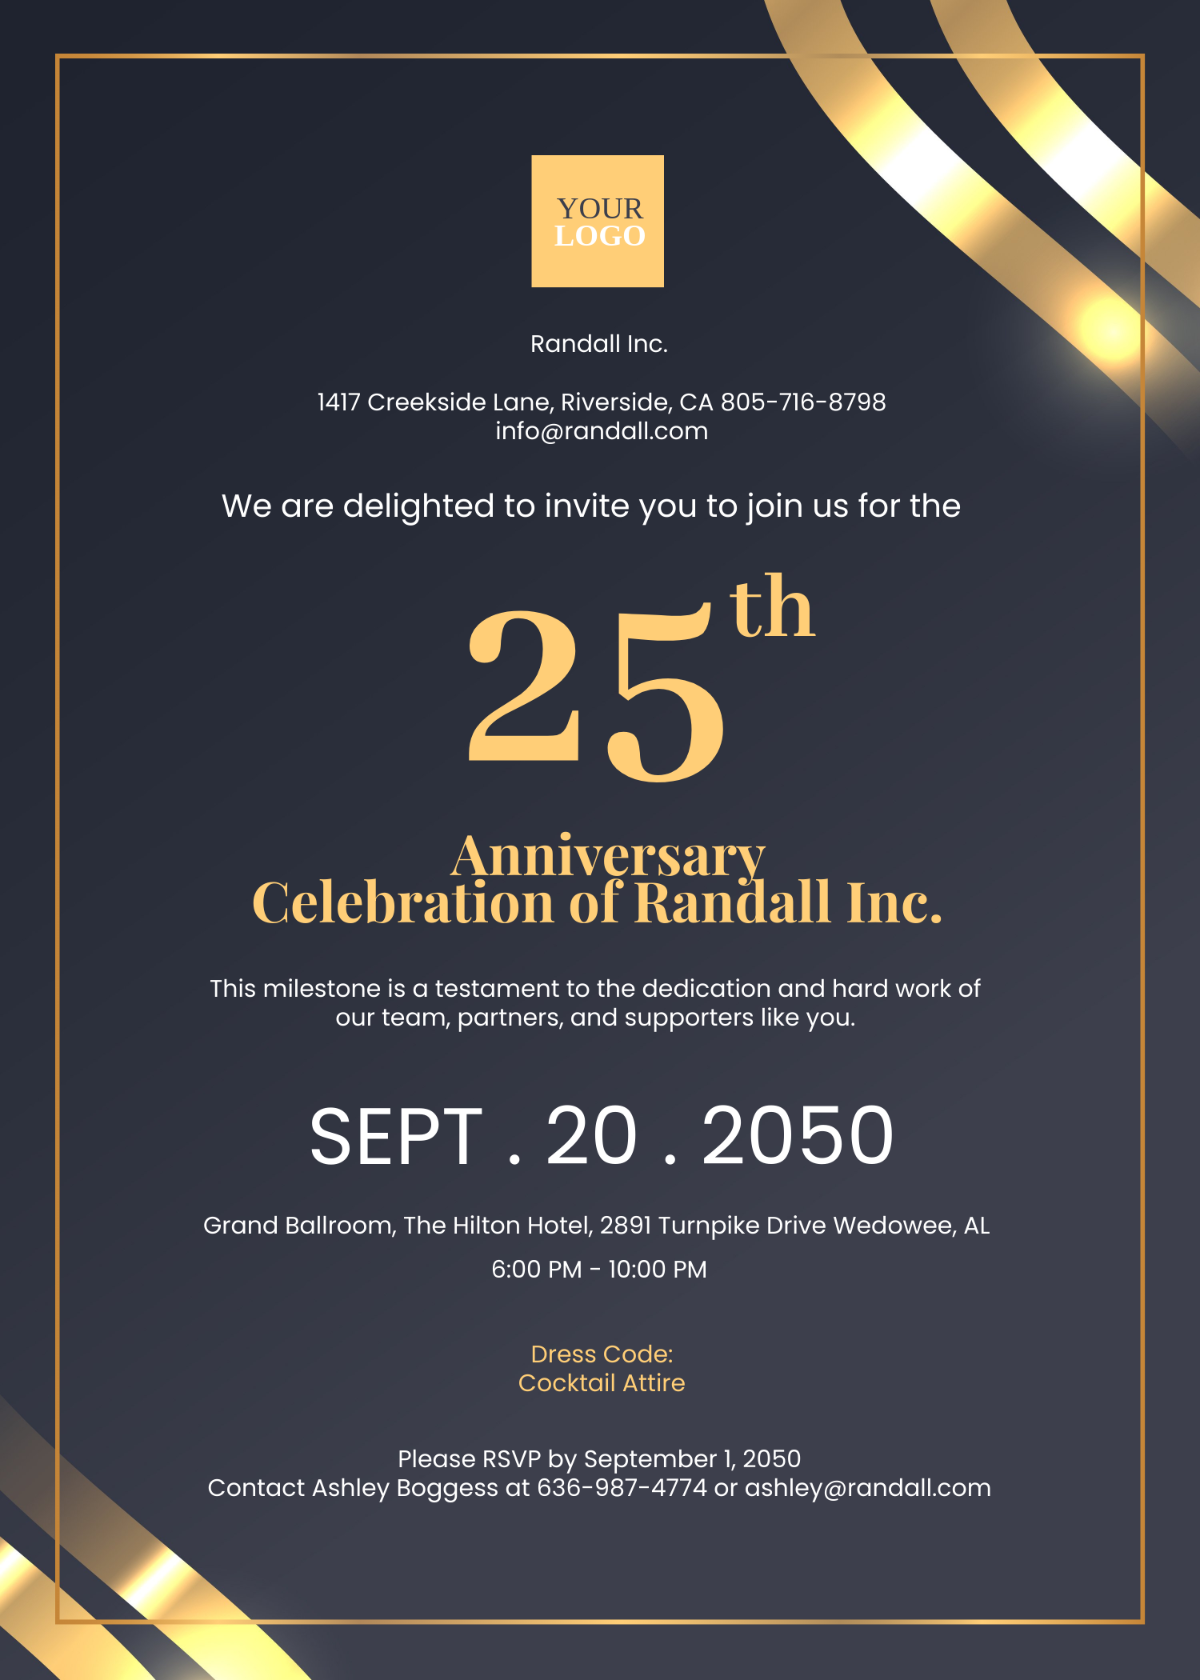 Company Anniversary Event Invitation